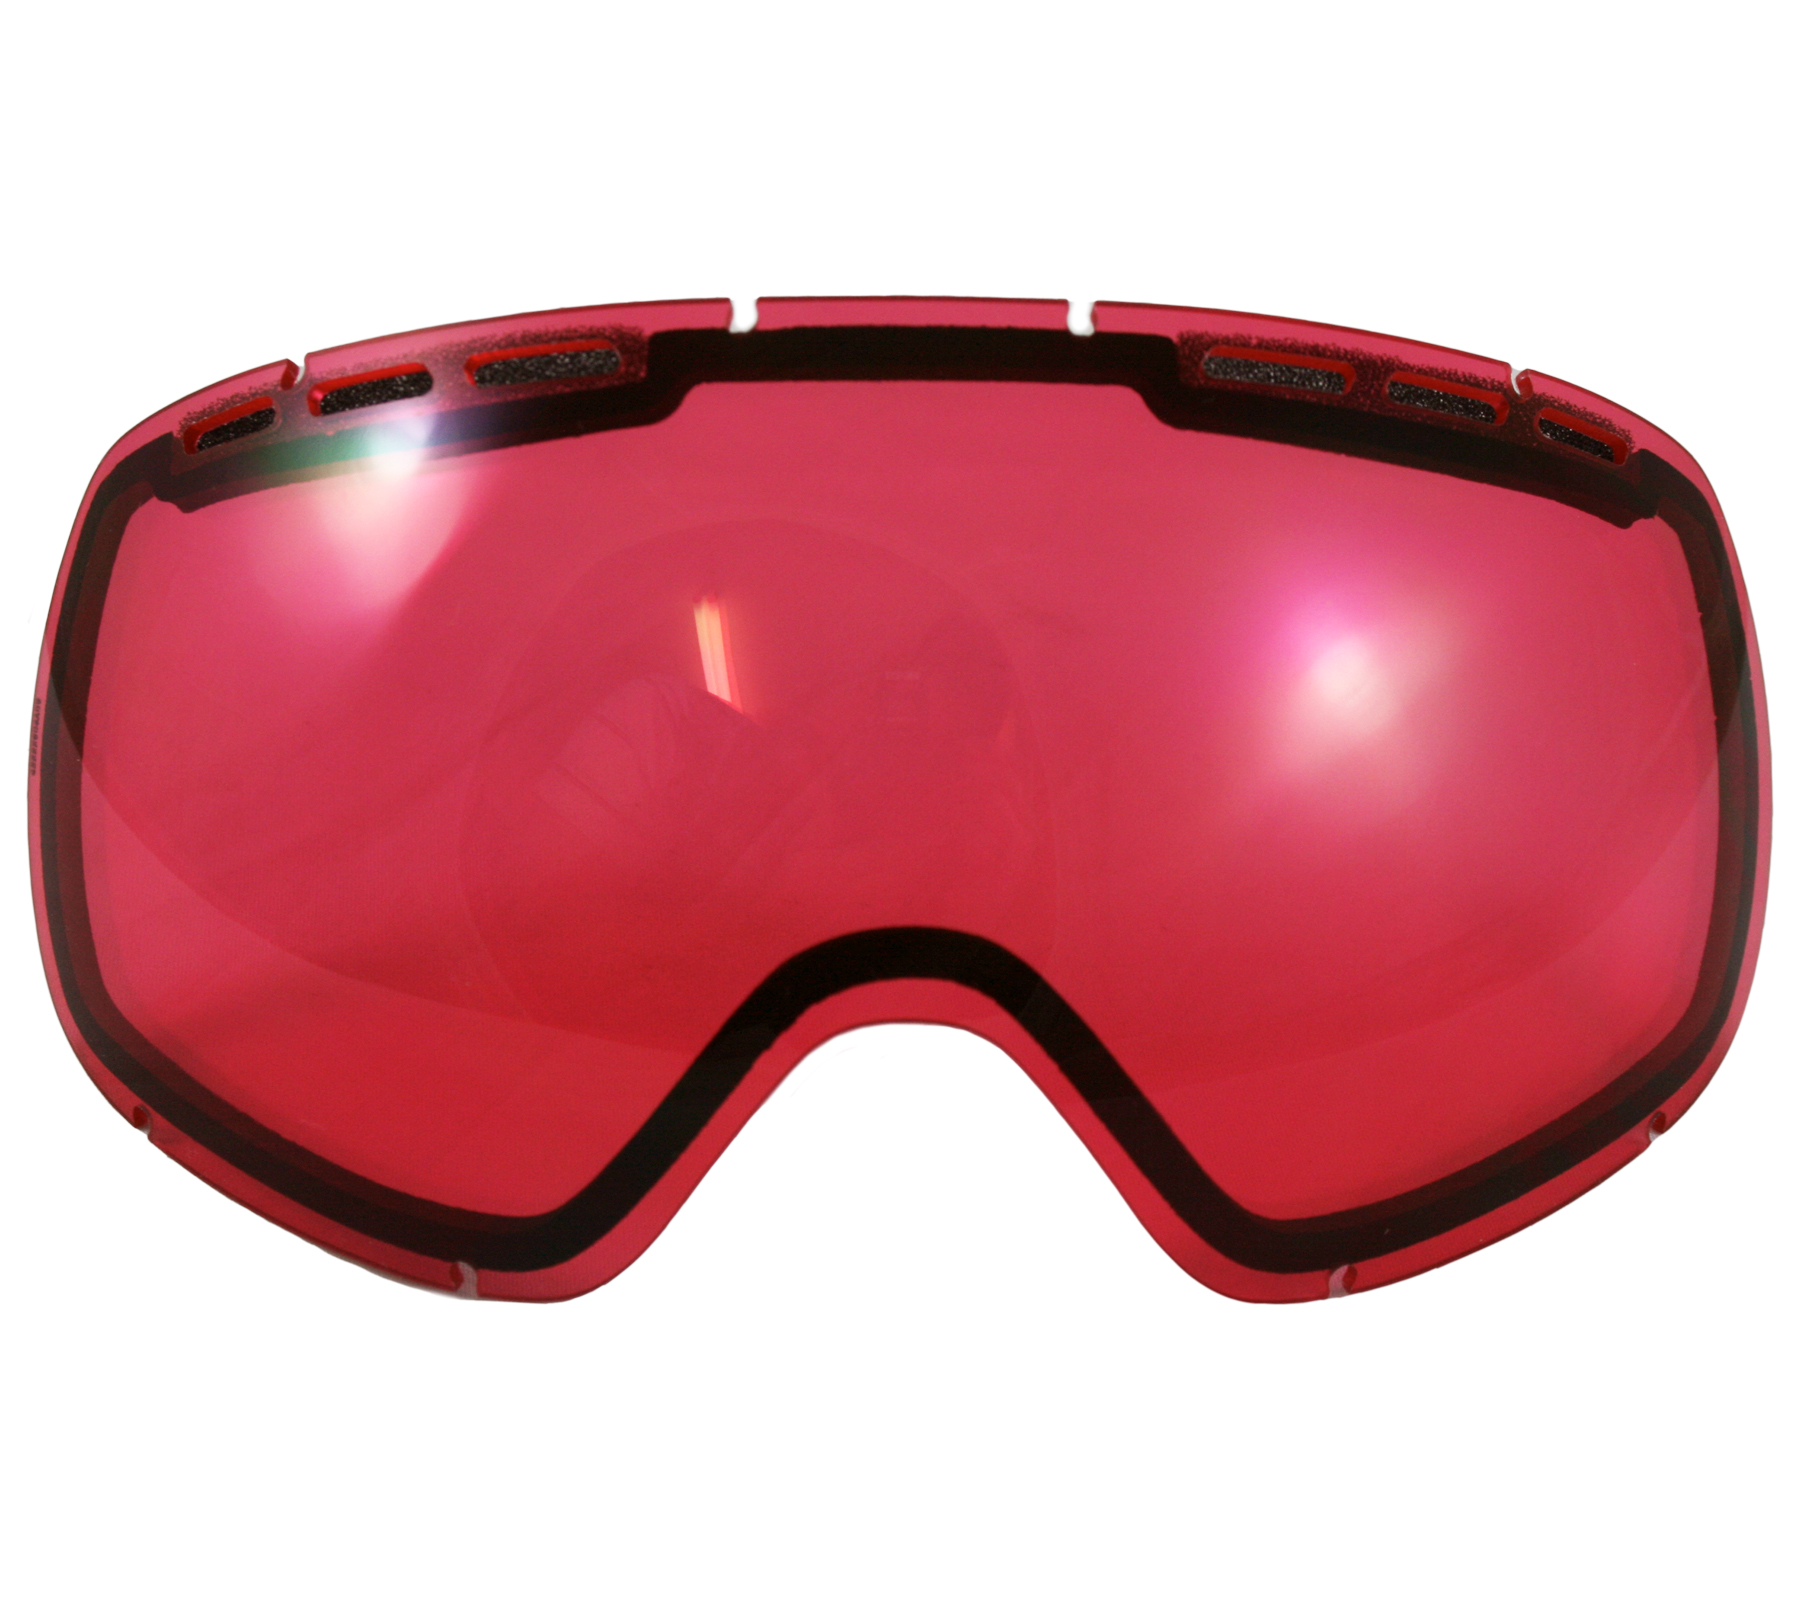 VON ZIPPER Feenom NLS Snowboard Ski Goggles Replacement